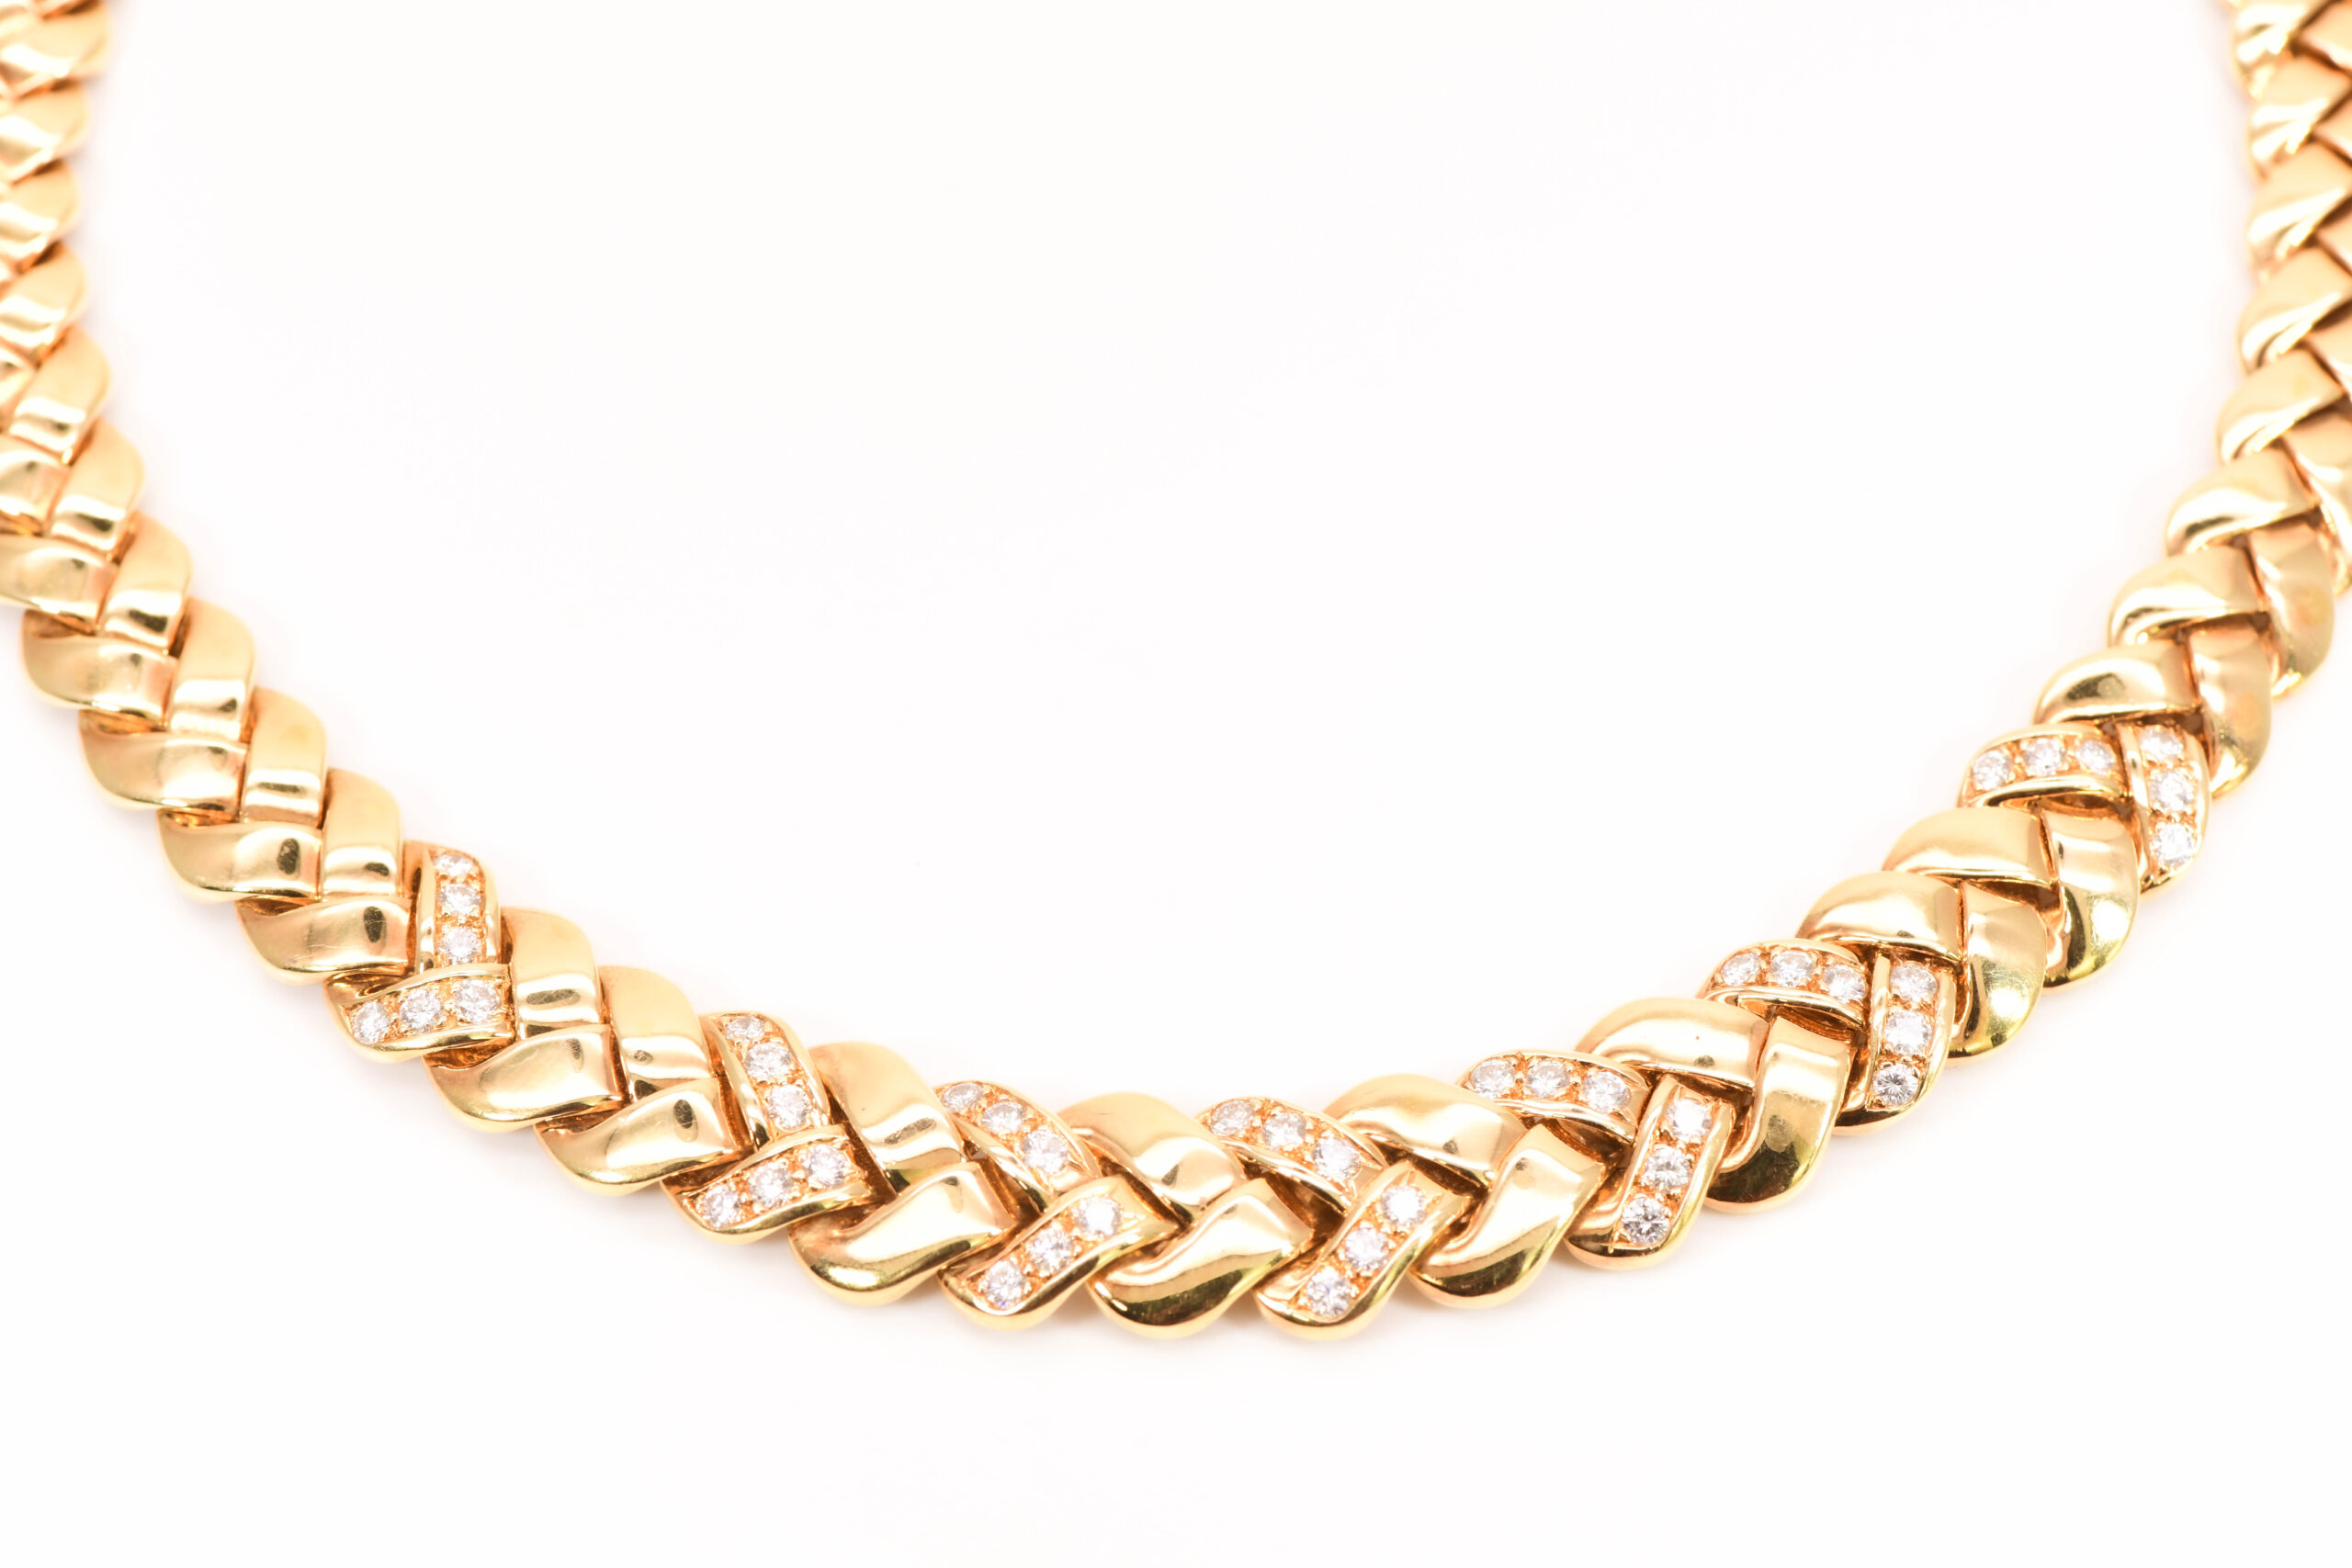 Van Cleef & Arpels Necklace 18k Yellow Gold Diamond